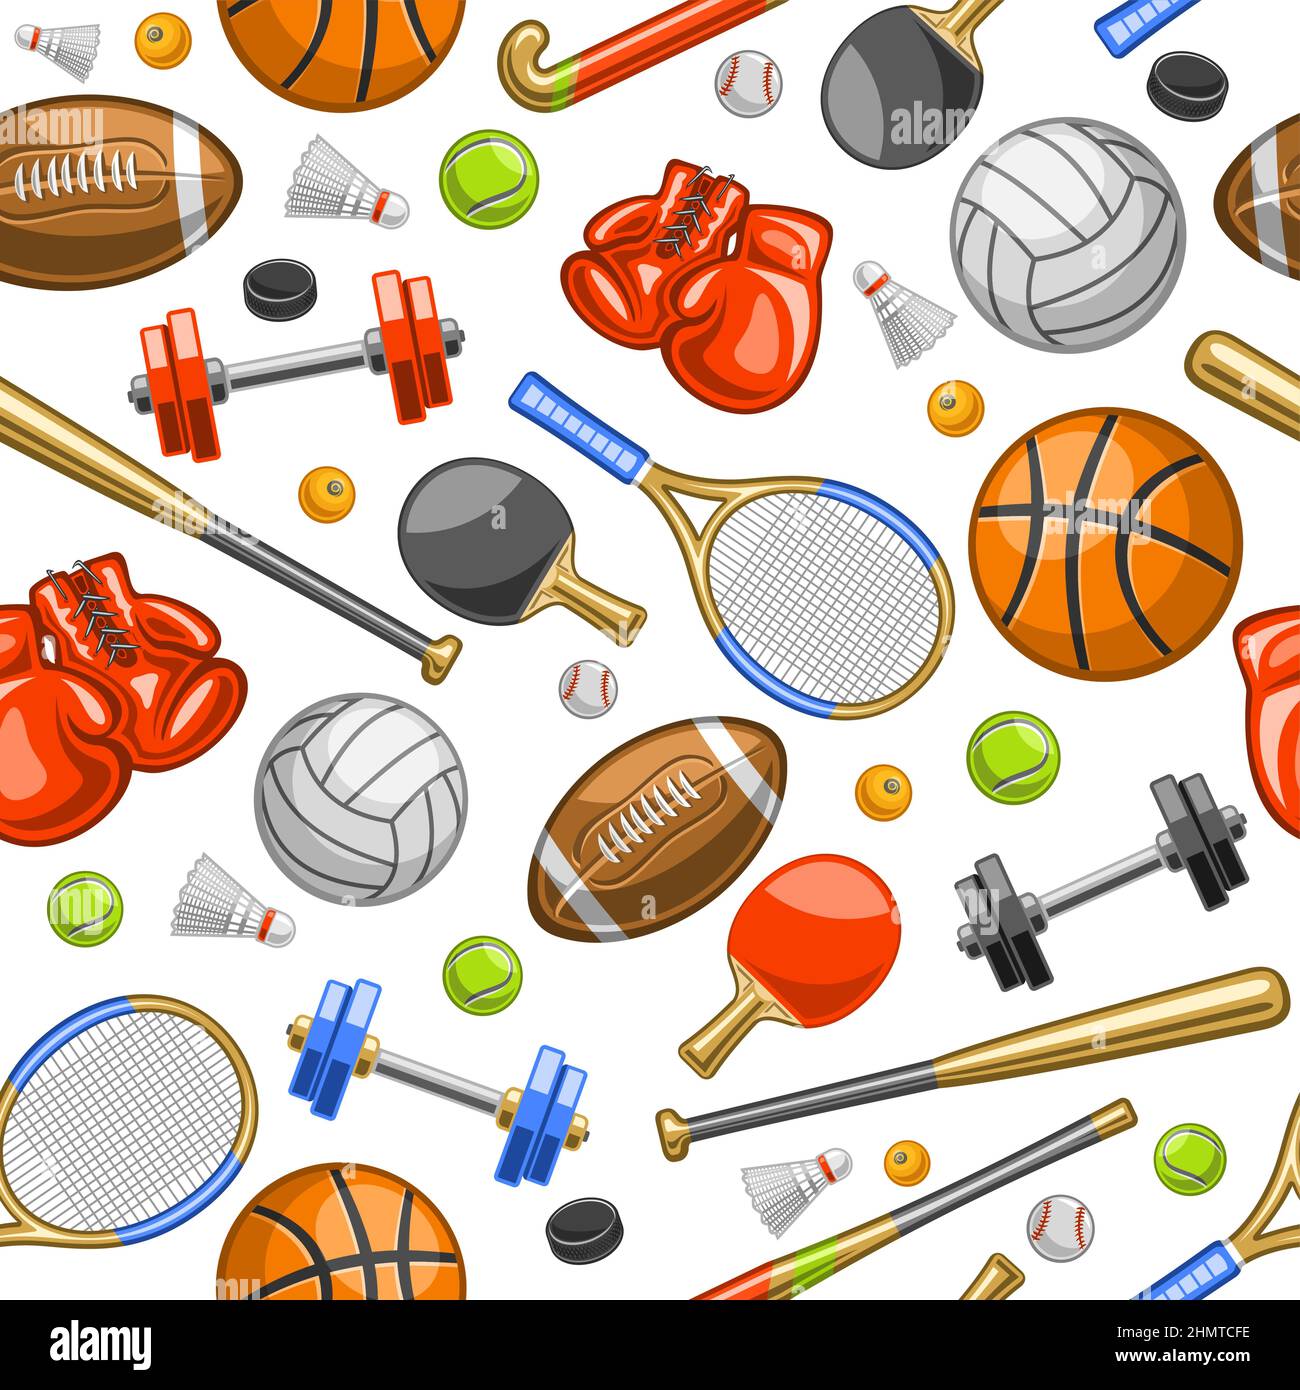 Vector Sports Seamless Pattern, fond carré répété avec illustrations découpées de divers équipements de sport d'été, gants de boxe en cuir rouge, tennis Illustration de Vecteur